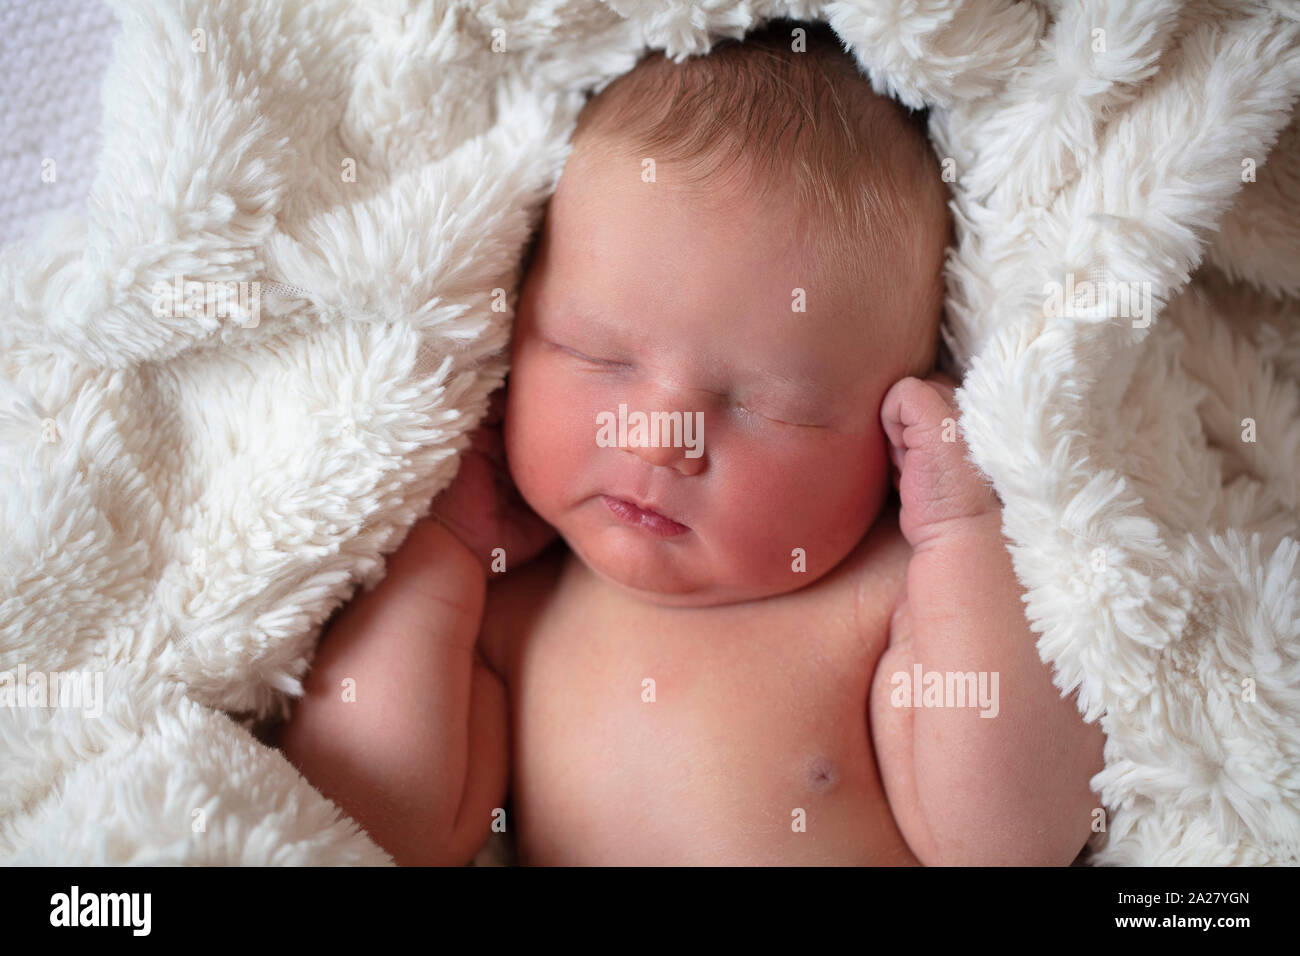 Un beau bébé nouveau-né de dormir dans une couverture de fourrure Banque D'Images